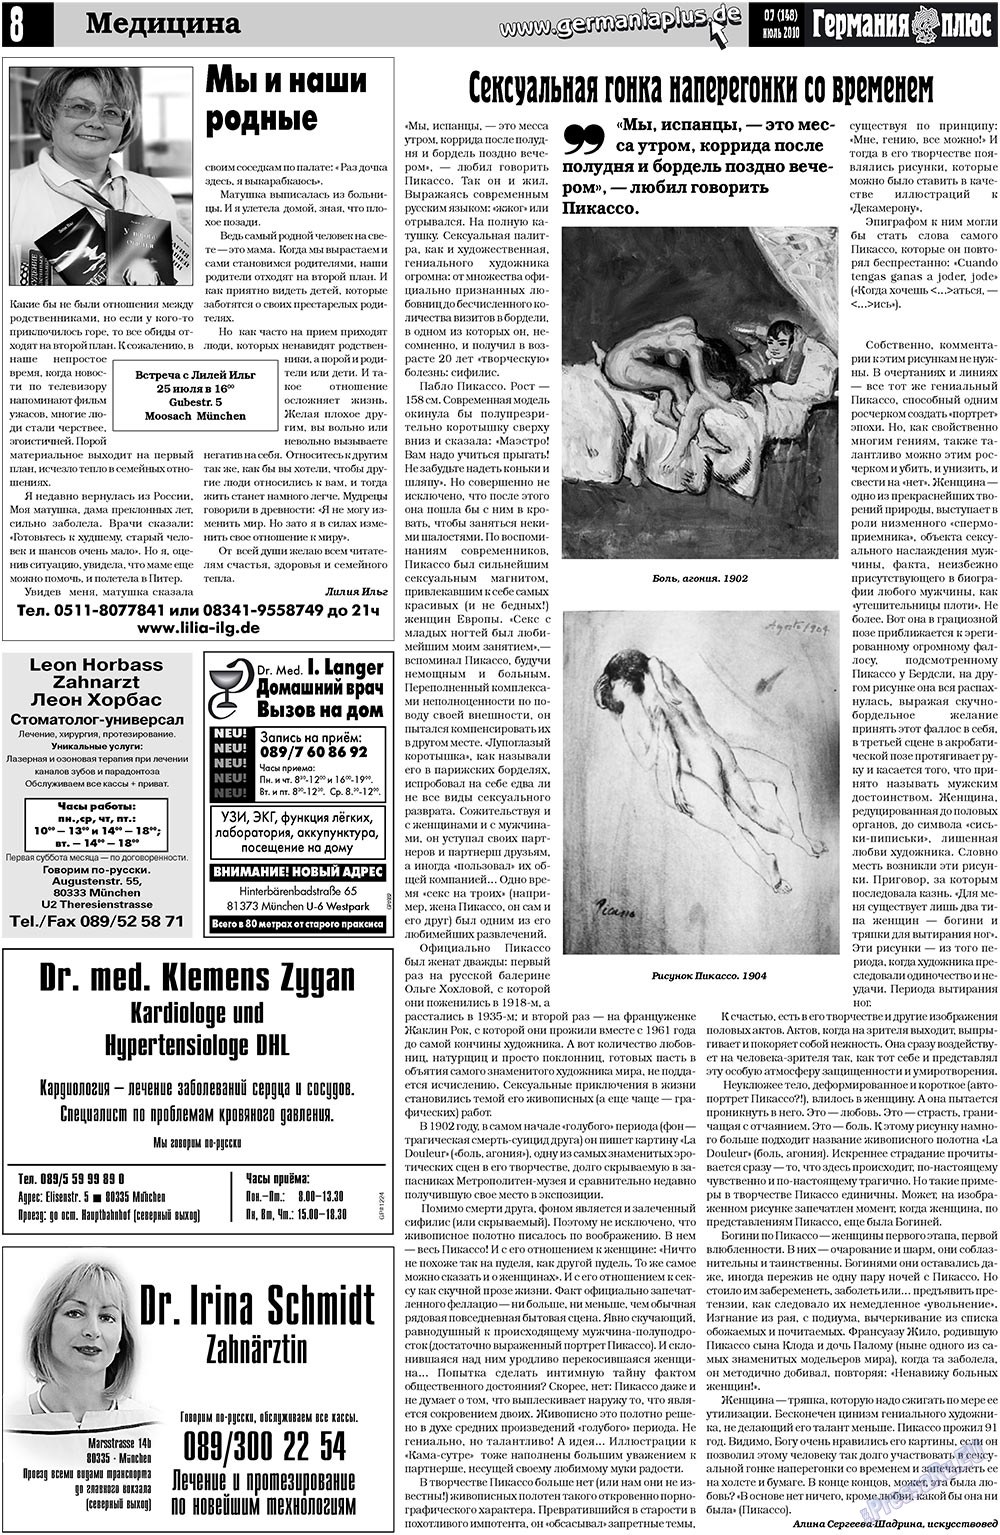 Германия плюс, газета. 2010 №7 стр.8